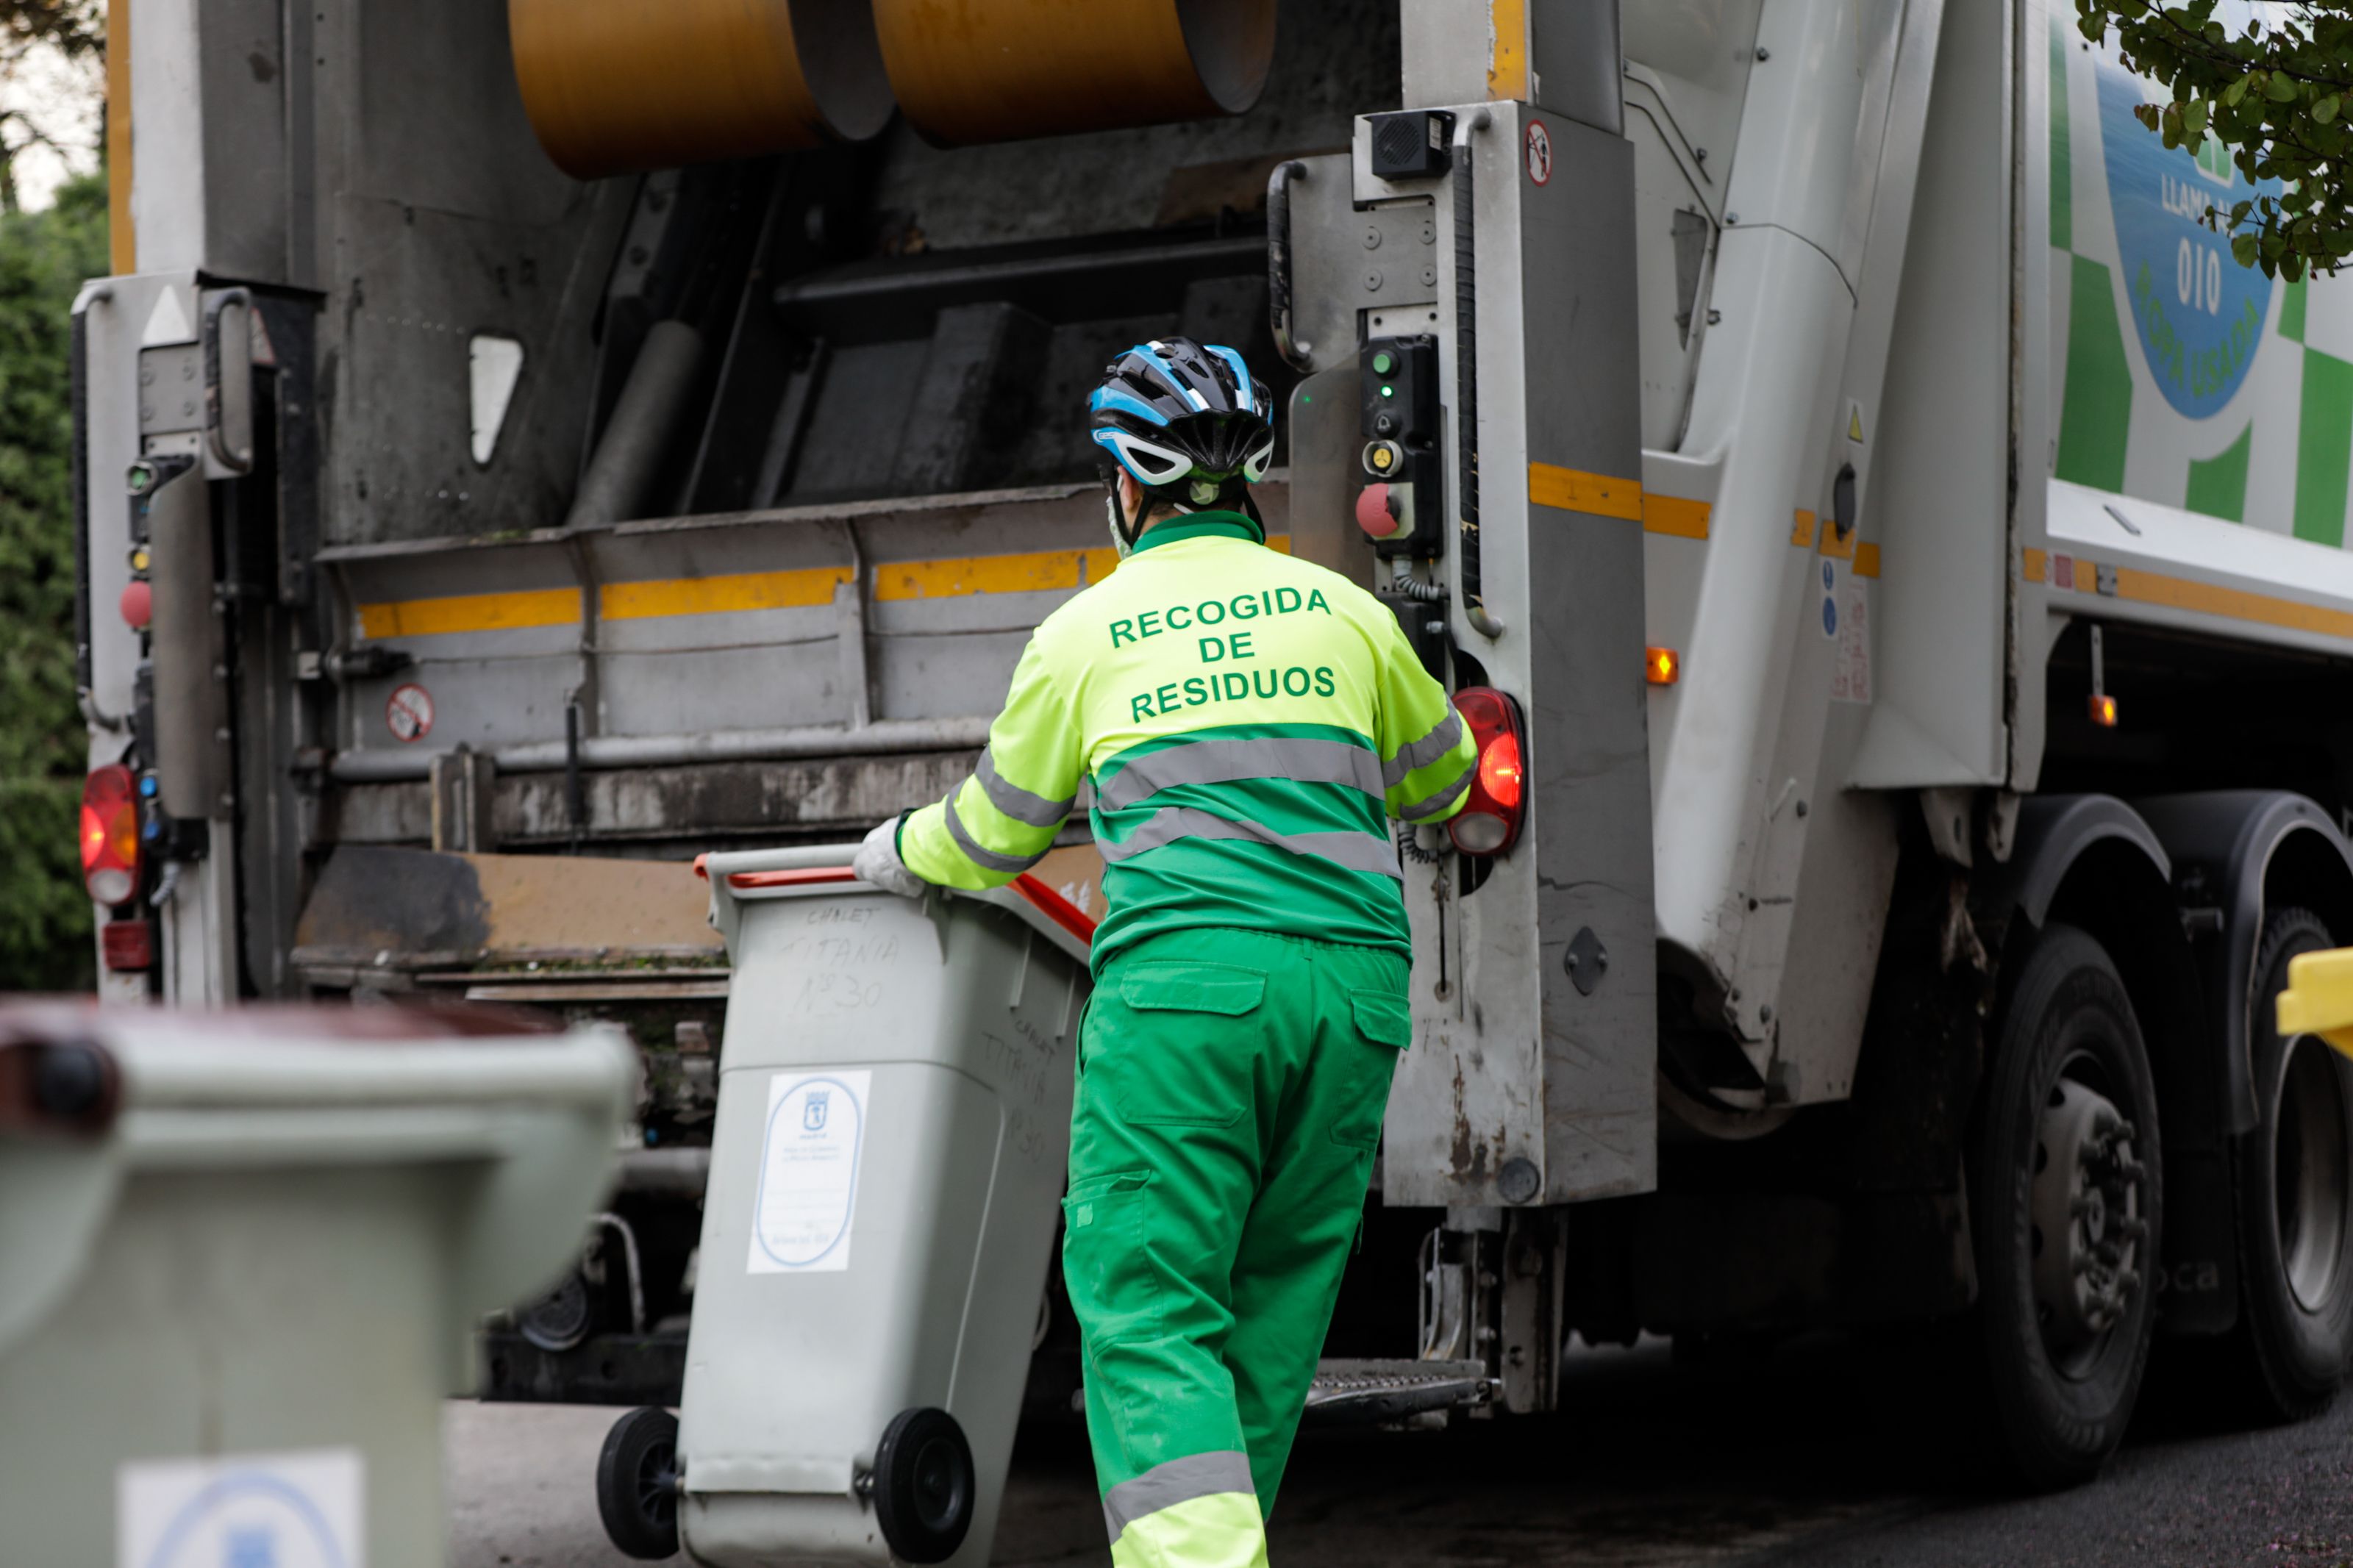 Tasa de basura: diferencias de más de 160 euros al año según la ciudad en la que vivas